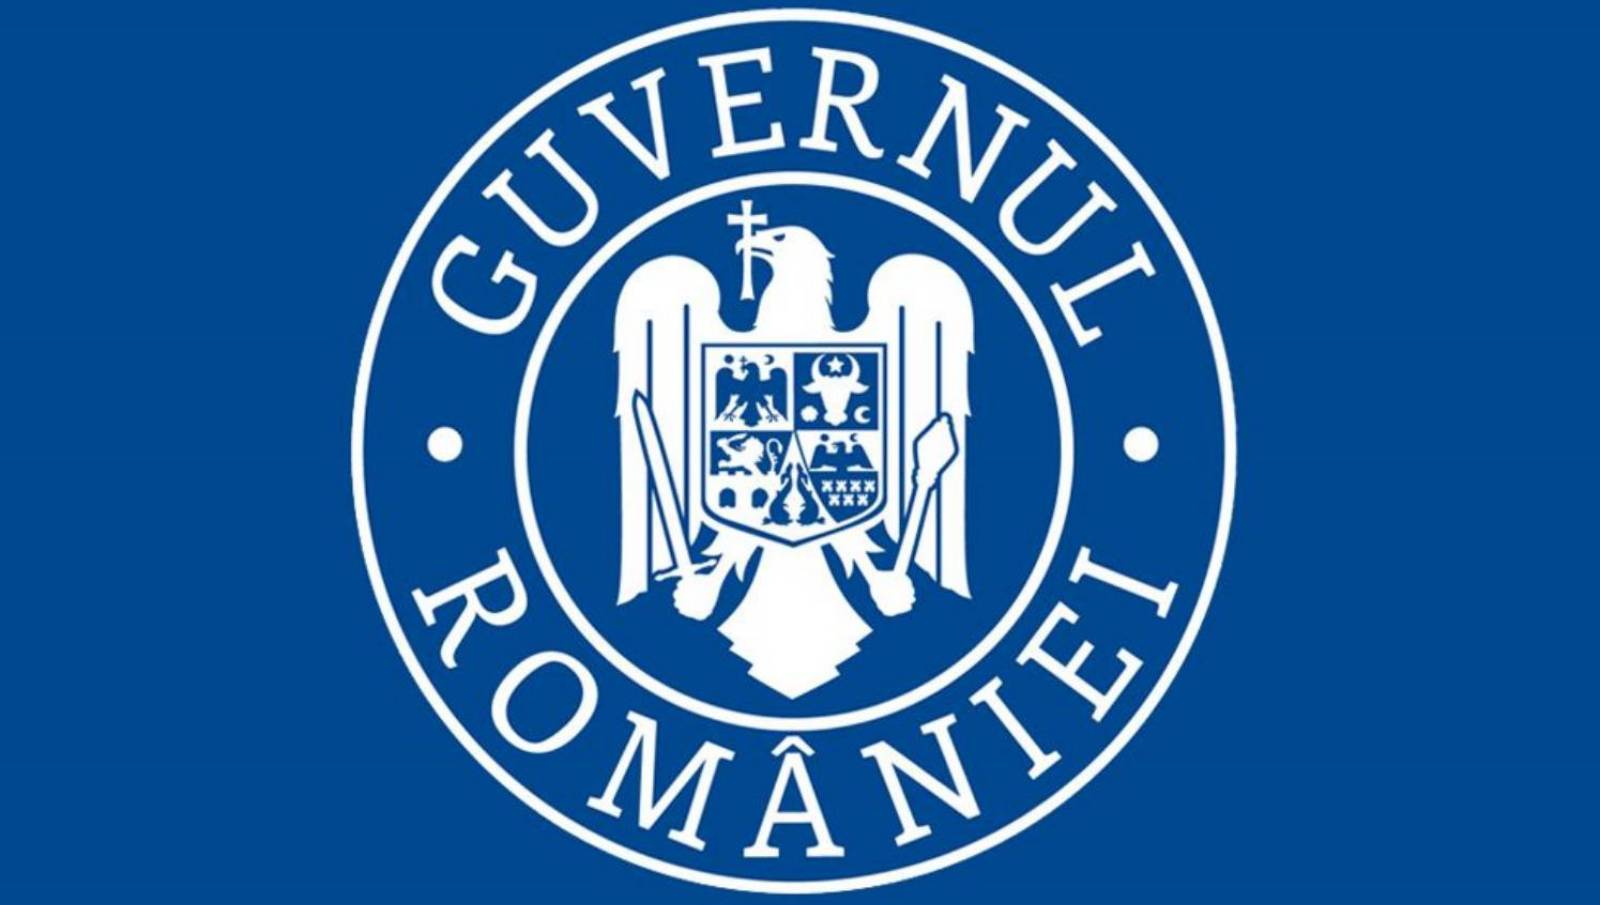 Romanian hallituksen kouluvaalit